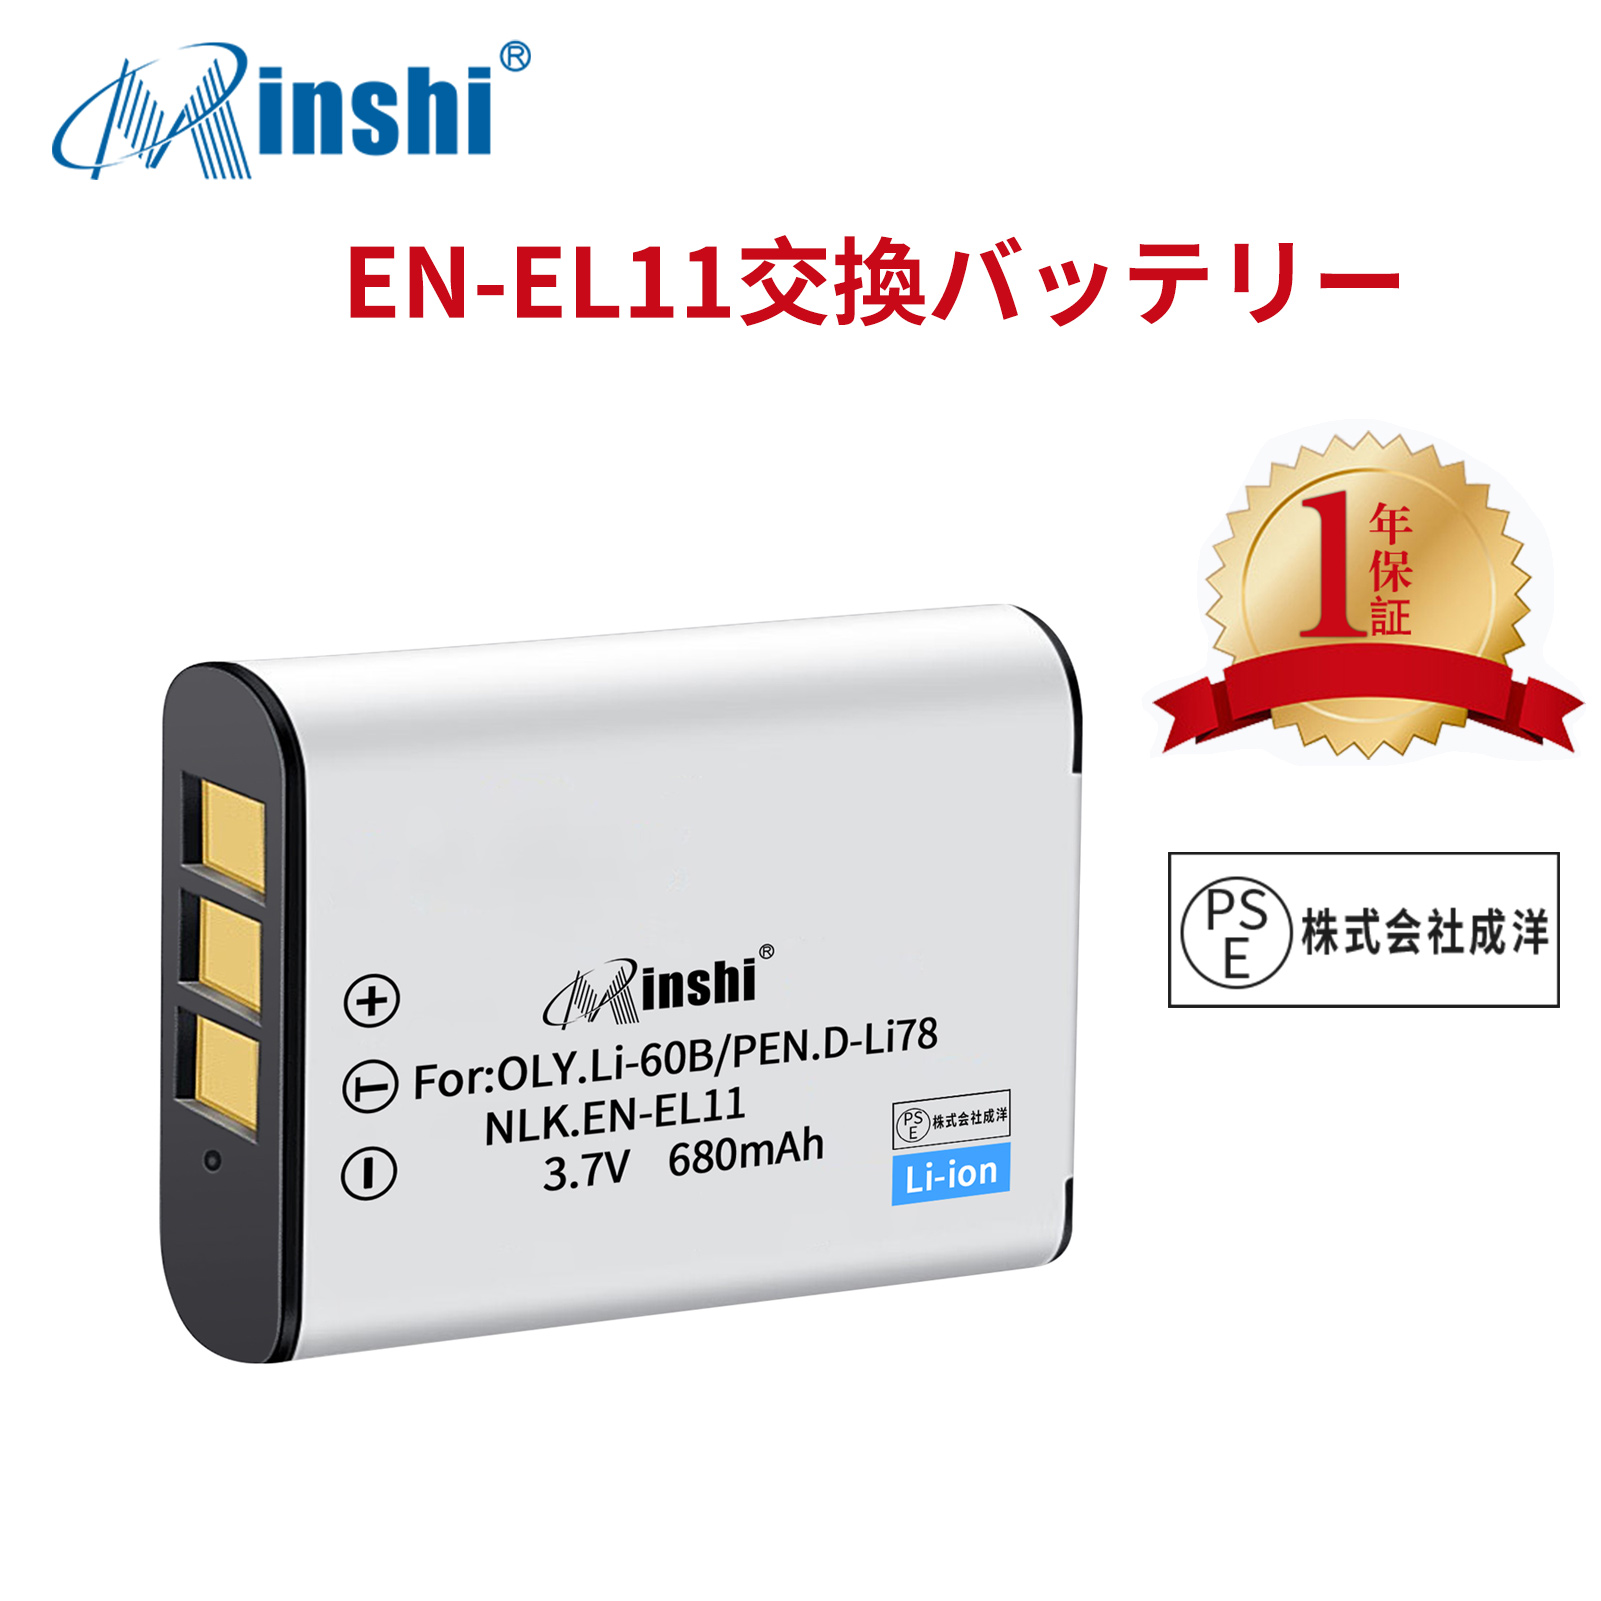 【1年保証】minshi NIKON D-LI78 VPC-E10 【680mAh 3.7V】PSE認定済 高品質交換用バッテリー オリジナル充電器との互換性がない